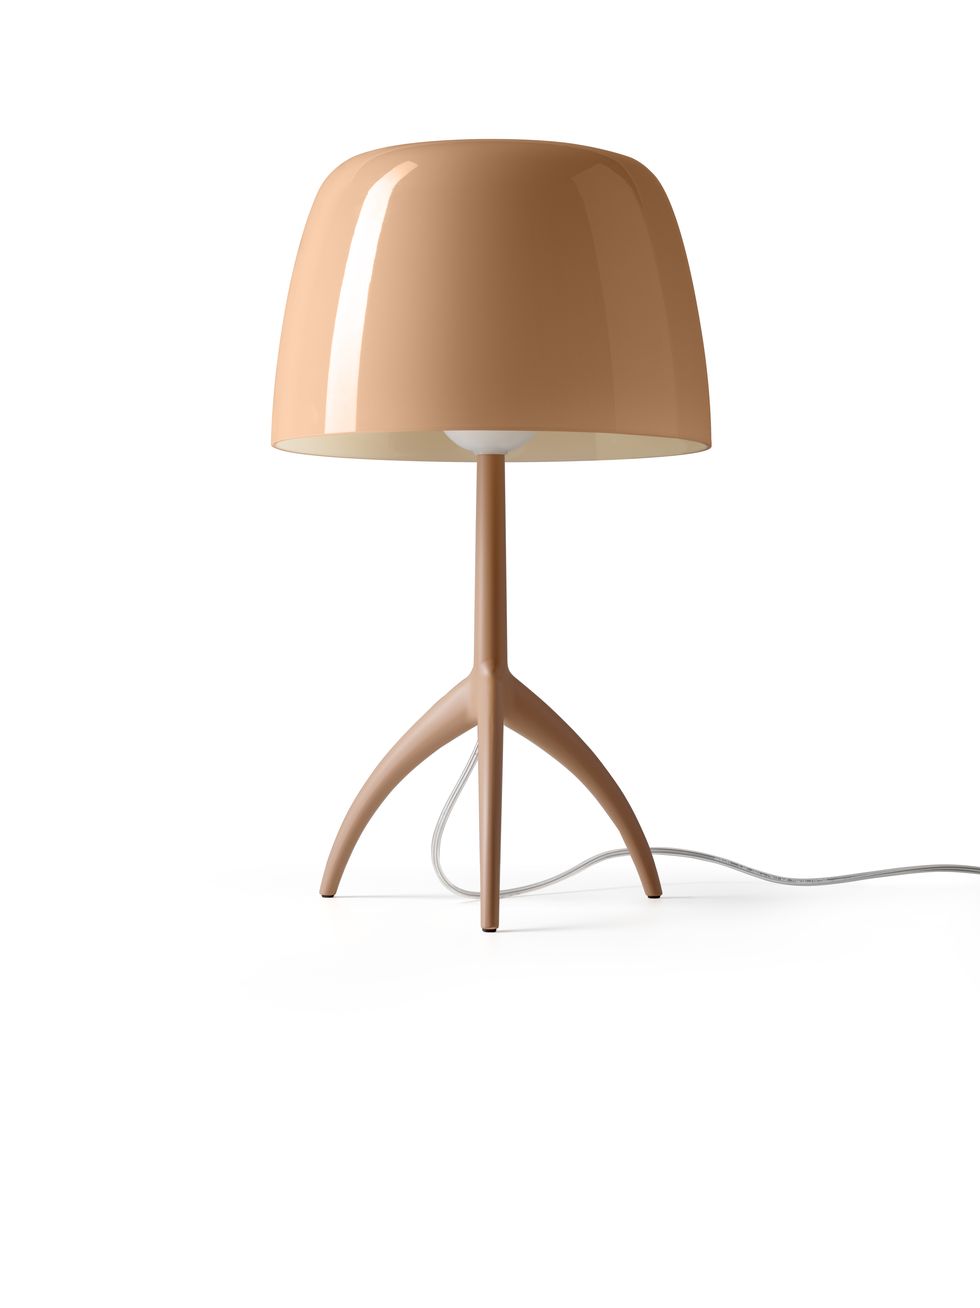 Le più belle lampade di design per il comodino